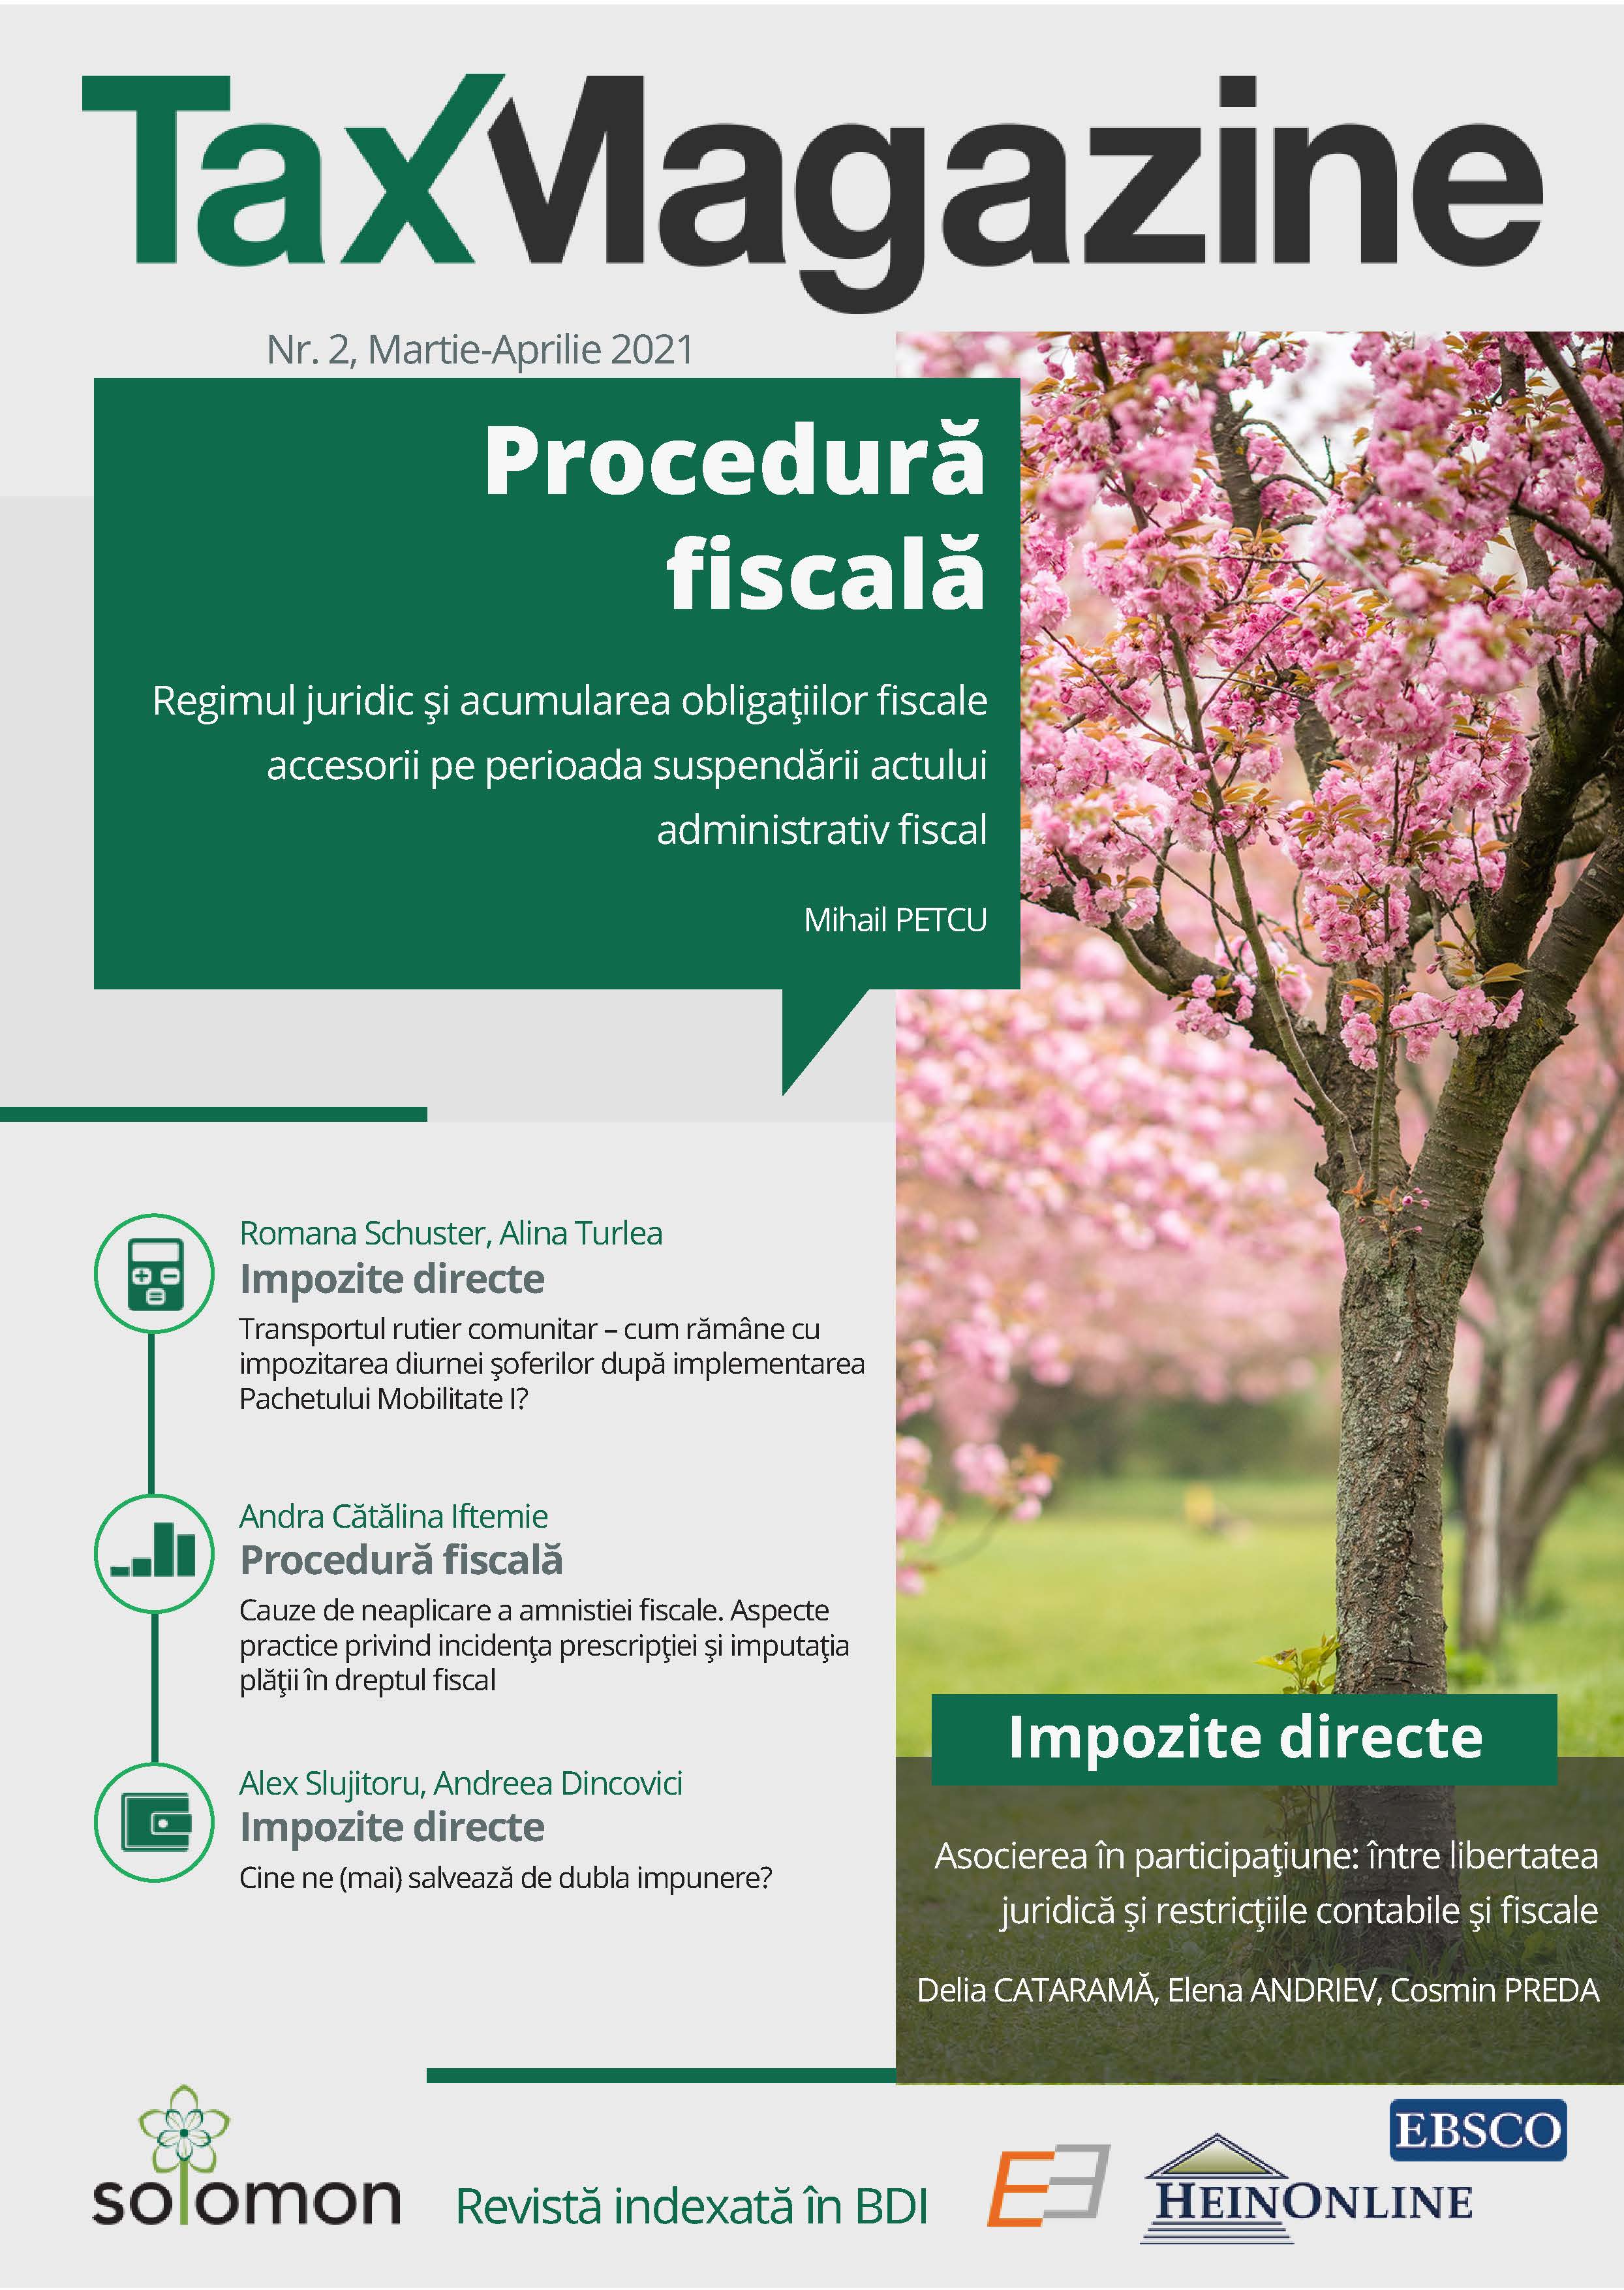 Regimul juridic și acumularea obligațiilor fiscale accesorii pe perioada suspendării actului administrativ fiscal